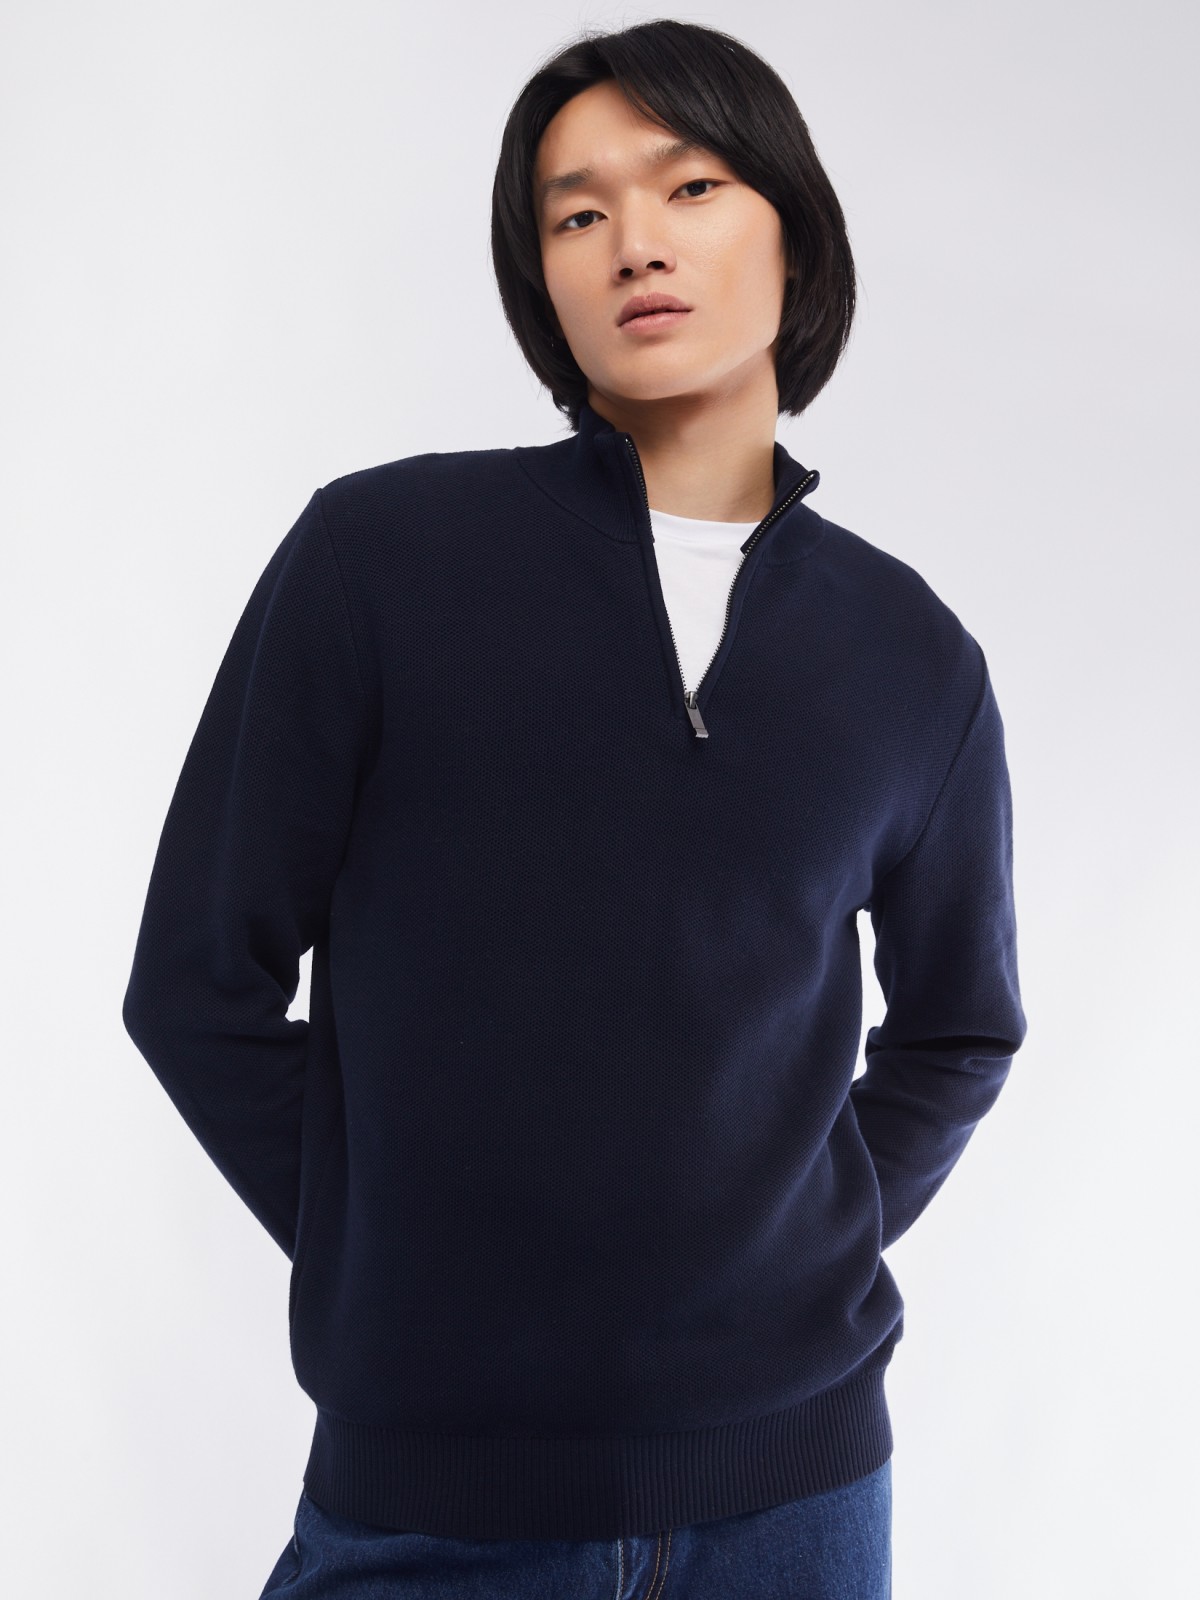 Тонкий трикотажный свитер с воротником на молнии zolla 014116801013, цвет синий, размер M